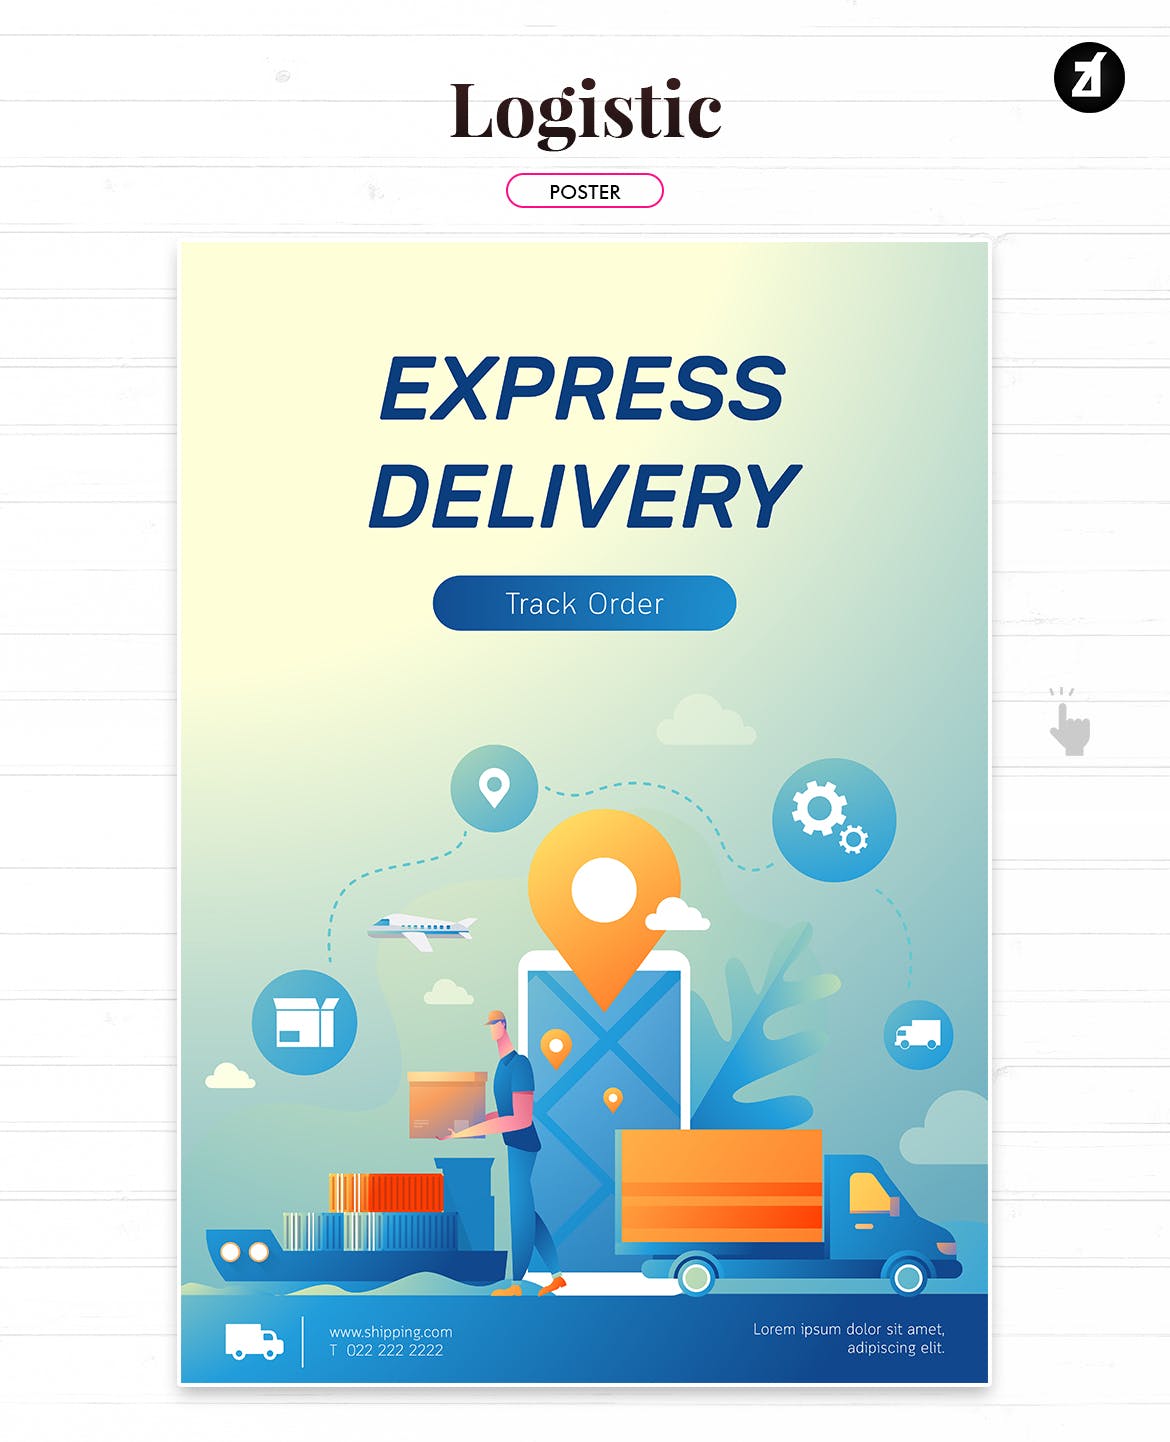 物流配送主题矢量插画设计素材 Logistic and delivery illustration with layout插图1